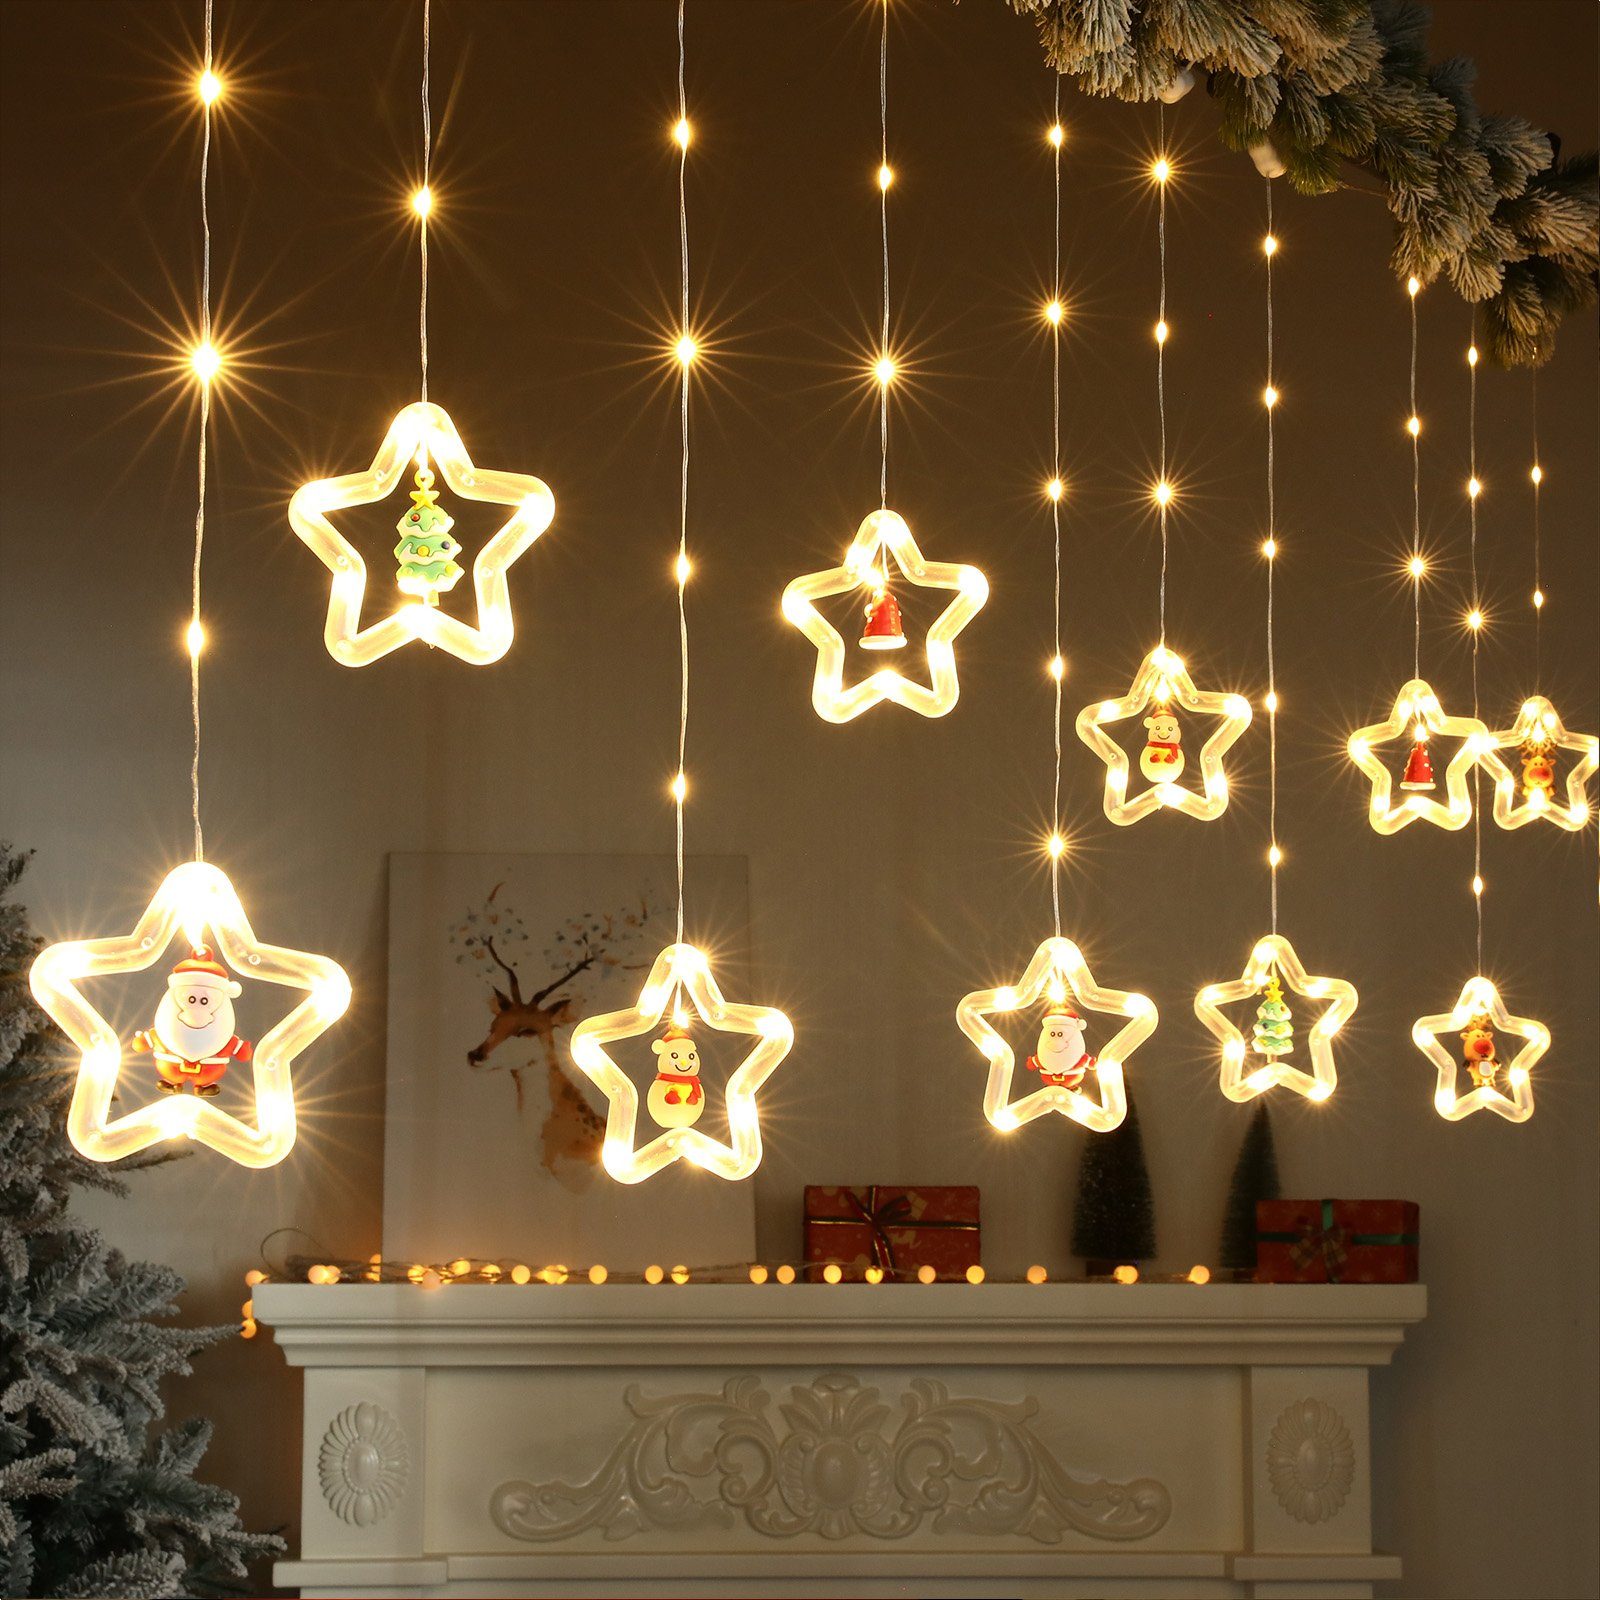 Sunicol LED-Lichterkette 3M Lichtervorhang, Fenster Party Weihnachtsdeko, USB/Batterie 8 Modi, Schneeflocken Sterne Xmas LED Lichterketten mit Fernsteuerung Timer Warmweiß Sterne